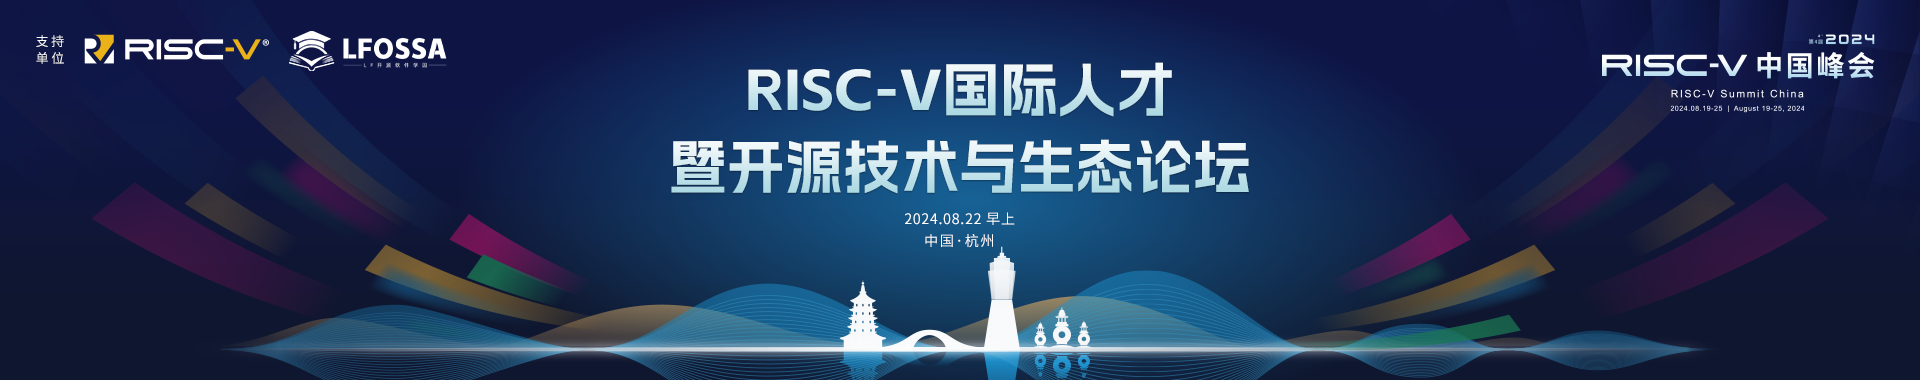 【议题征集截止至7月26日】国际开源及RISC-V人才暨开源技术与生态之旅